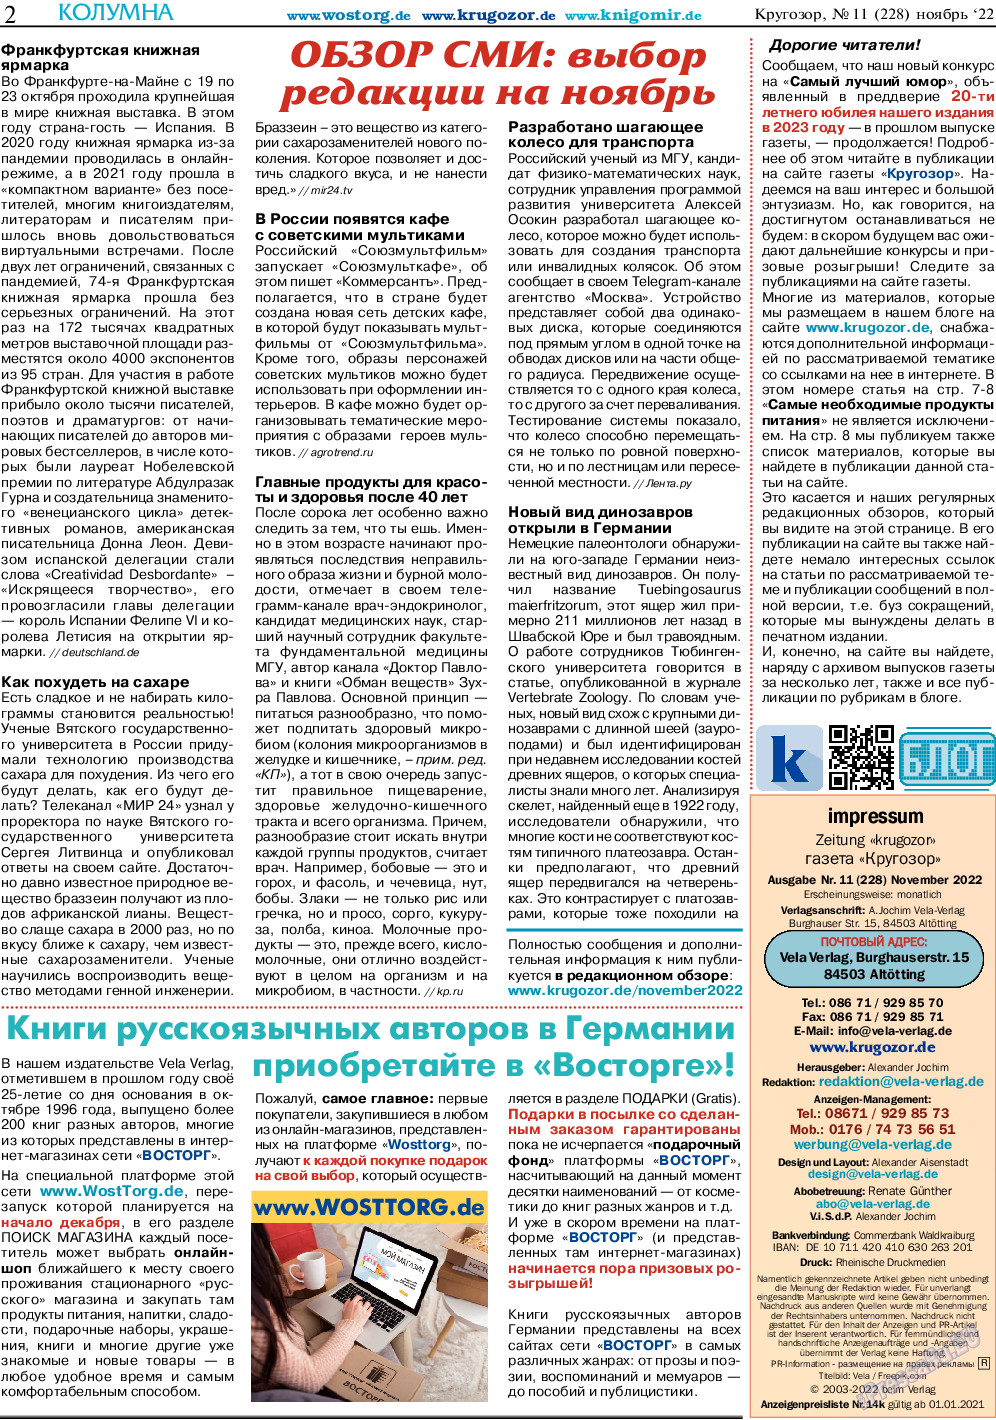 Кругозор, газета. 2022 №11 стр.2